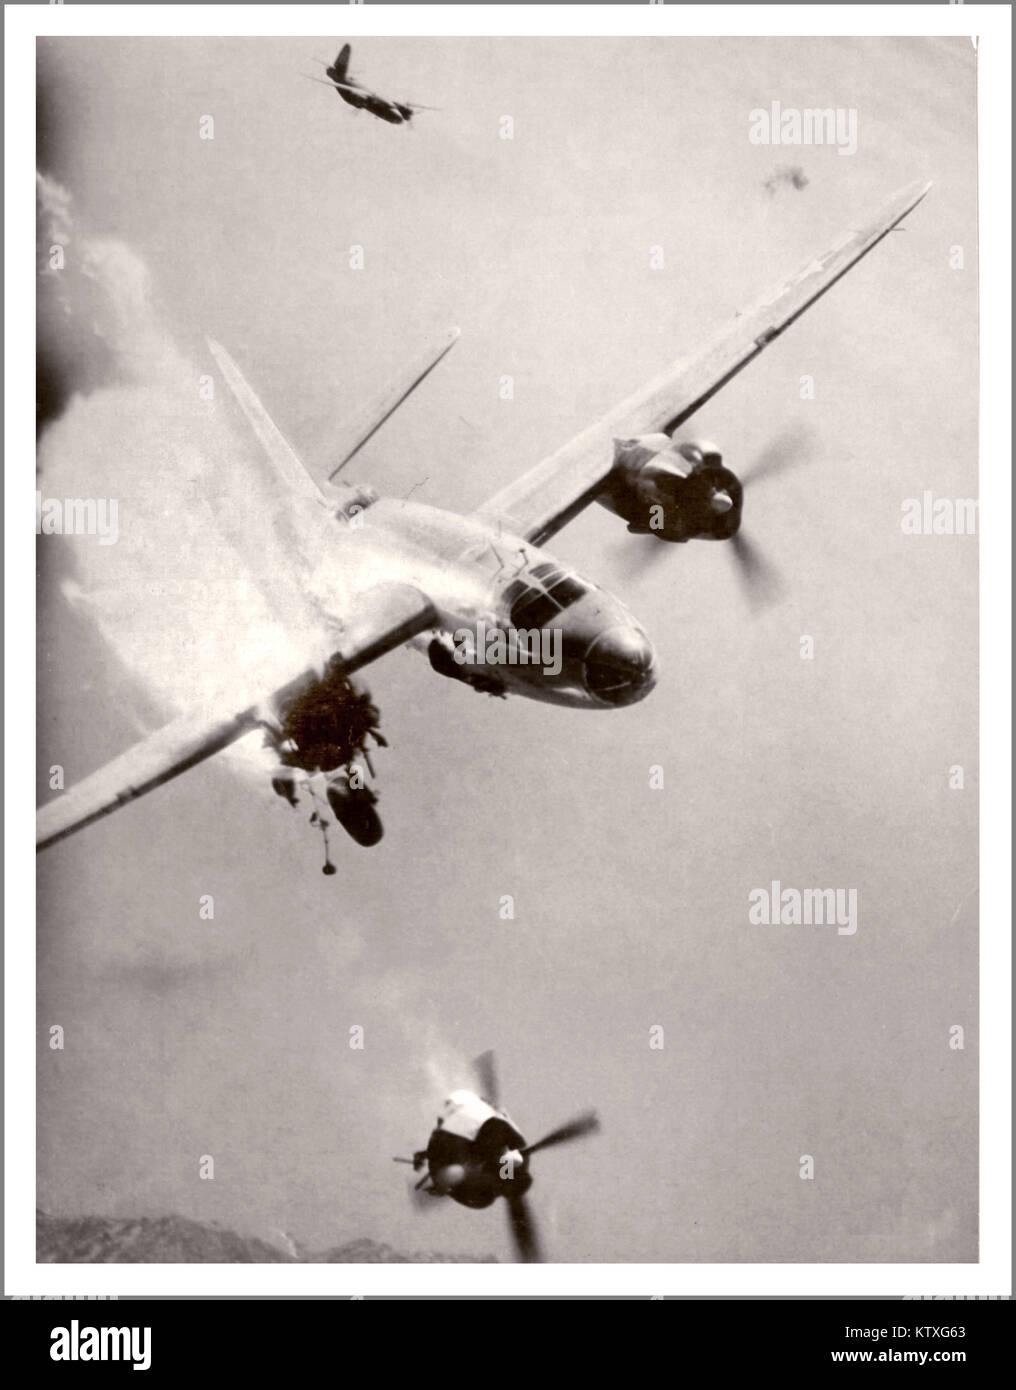 WW2 American Airforce USAAF B26 bombardier abattu par des flammes au-dessus de la France. Sinistre image de guerre aérienne remarquable, d'un Marauder B-26 américain paralysé après un coup direct par un obus de 88 mm de l'Allemagne nazie au-dessus du port de Toulon, dans le sud de la France. Hélice tribord et moteur complètement séparés. 3 des 6 membres d'équipage ont survécu à cet incident de combat aérien. Banque D'Images